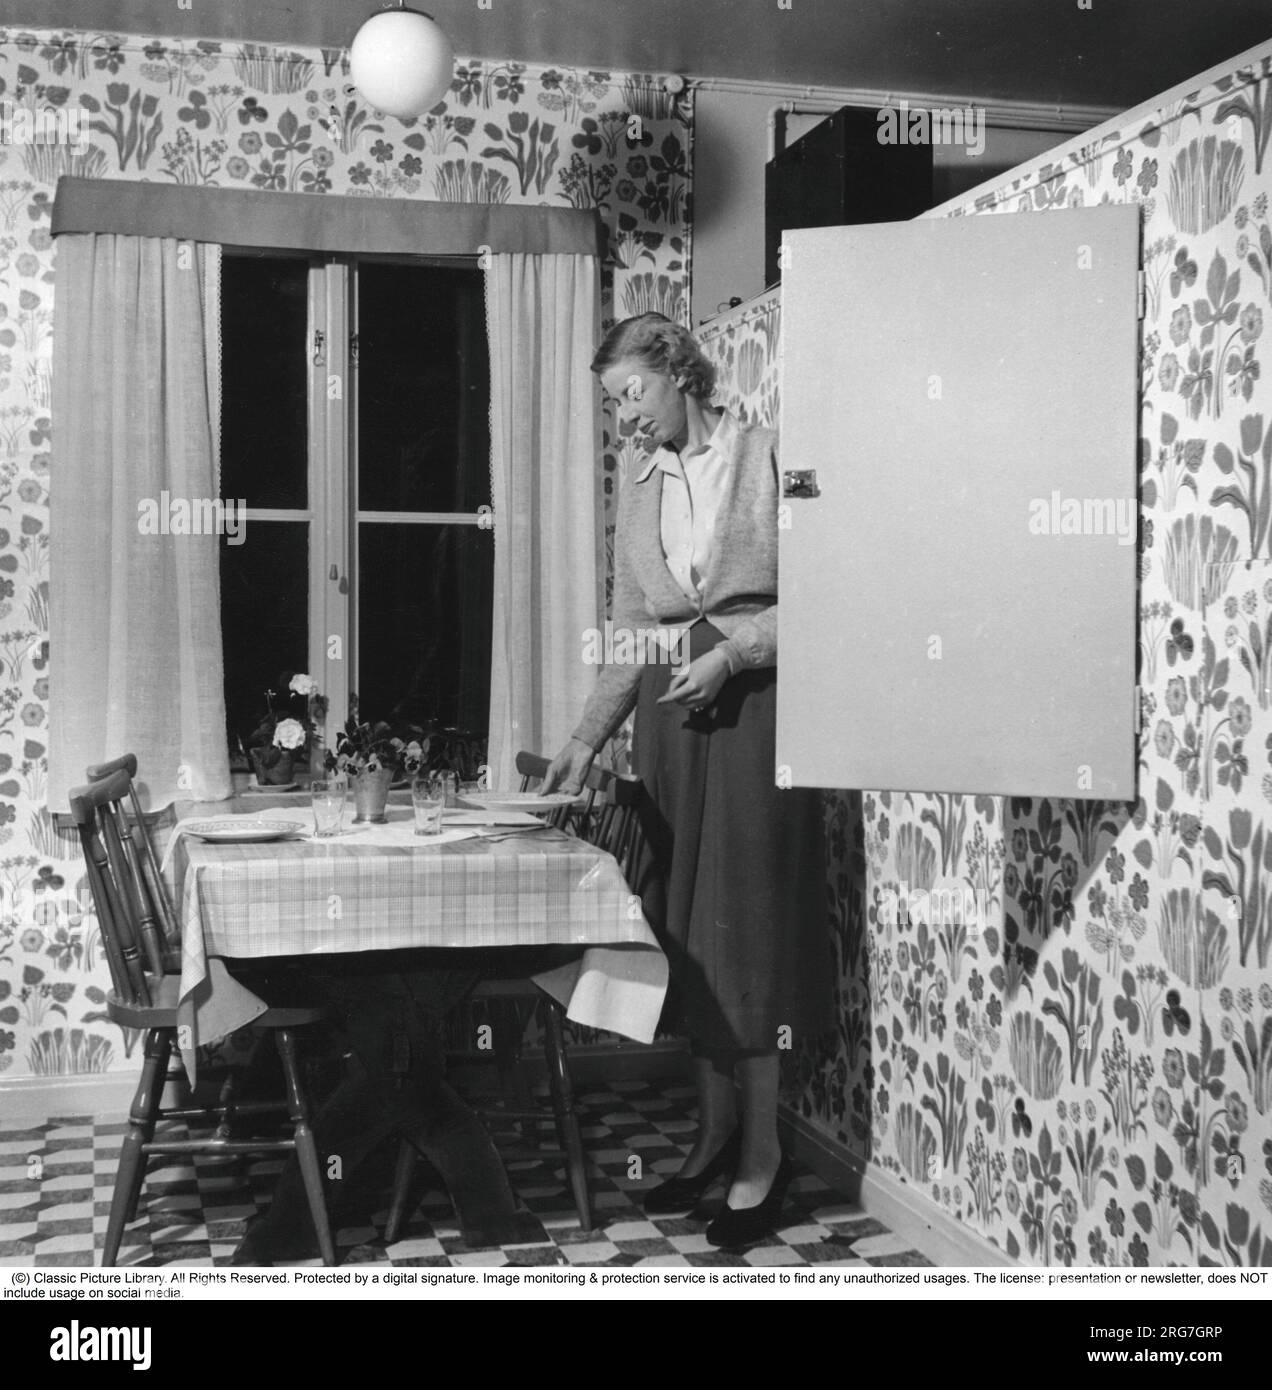 maison des années 1950. Une femme est vue en train de mettre la table pour le dîner et arrange les assiettes et les verres qu'elle prend dans un placard intégré. Suède 1950 Banque D'Images